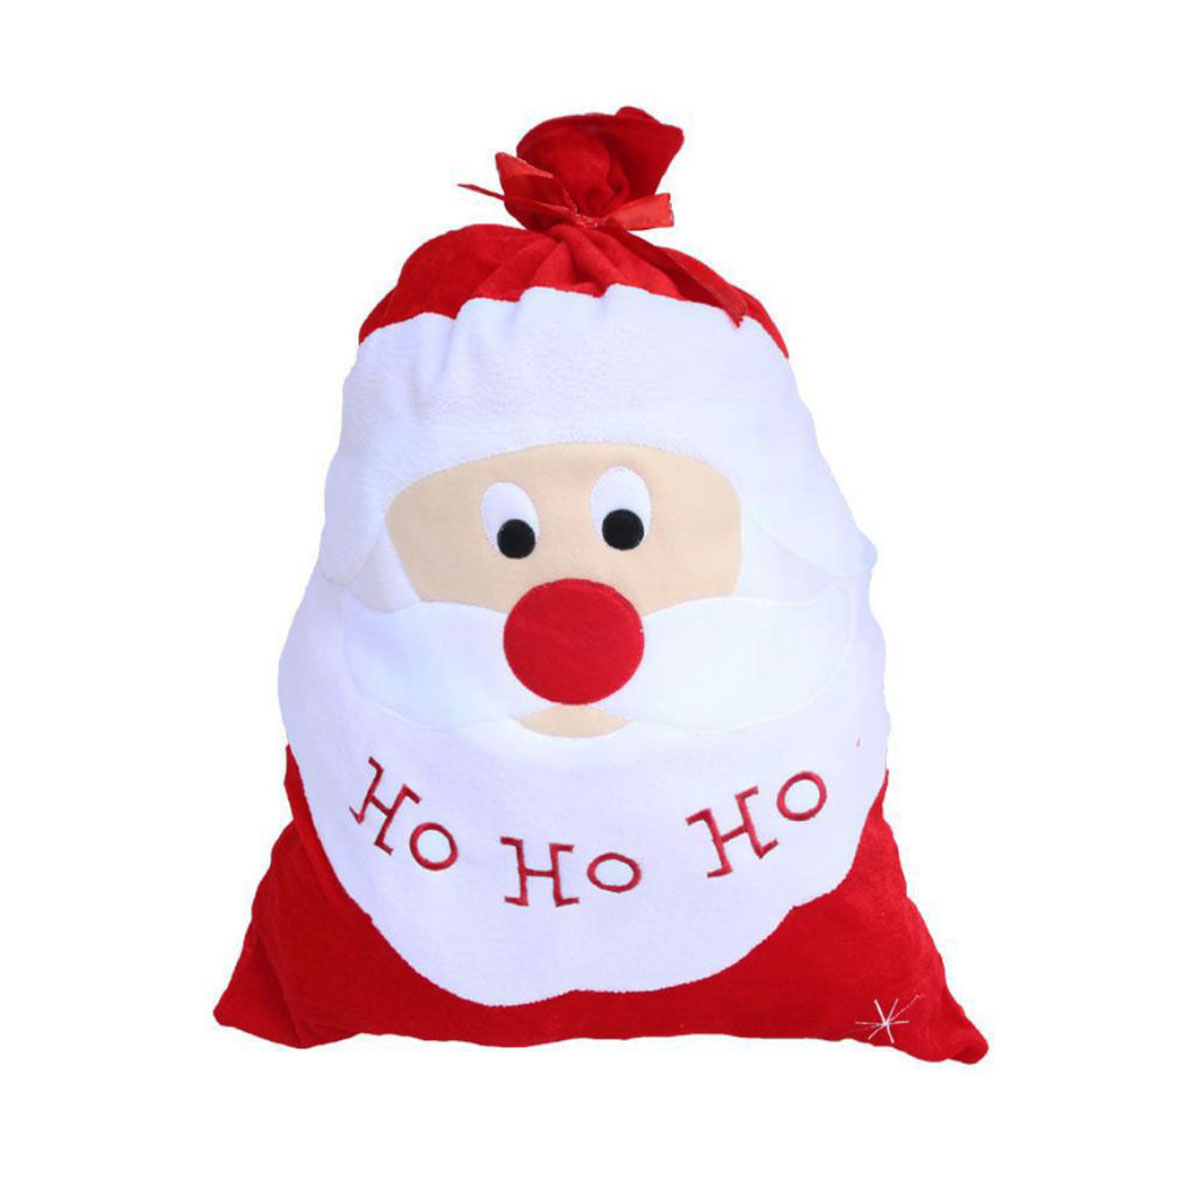 クリスマス ラッピング 袋 大きい christmas プレゼント ラッピング袋 大 クリスマスプレゼント 包装 サンタ